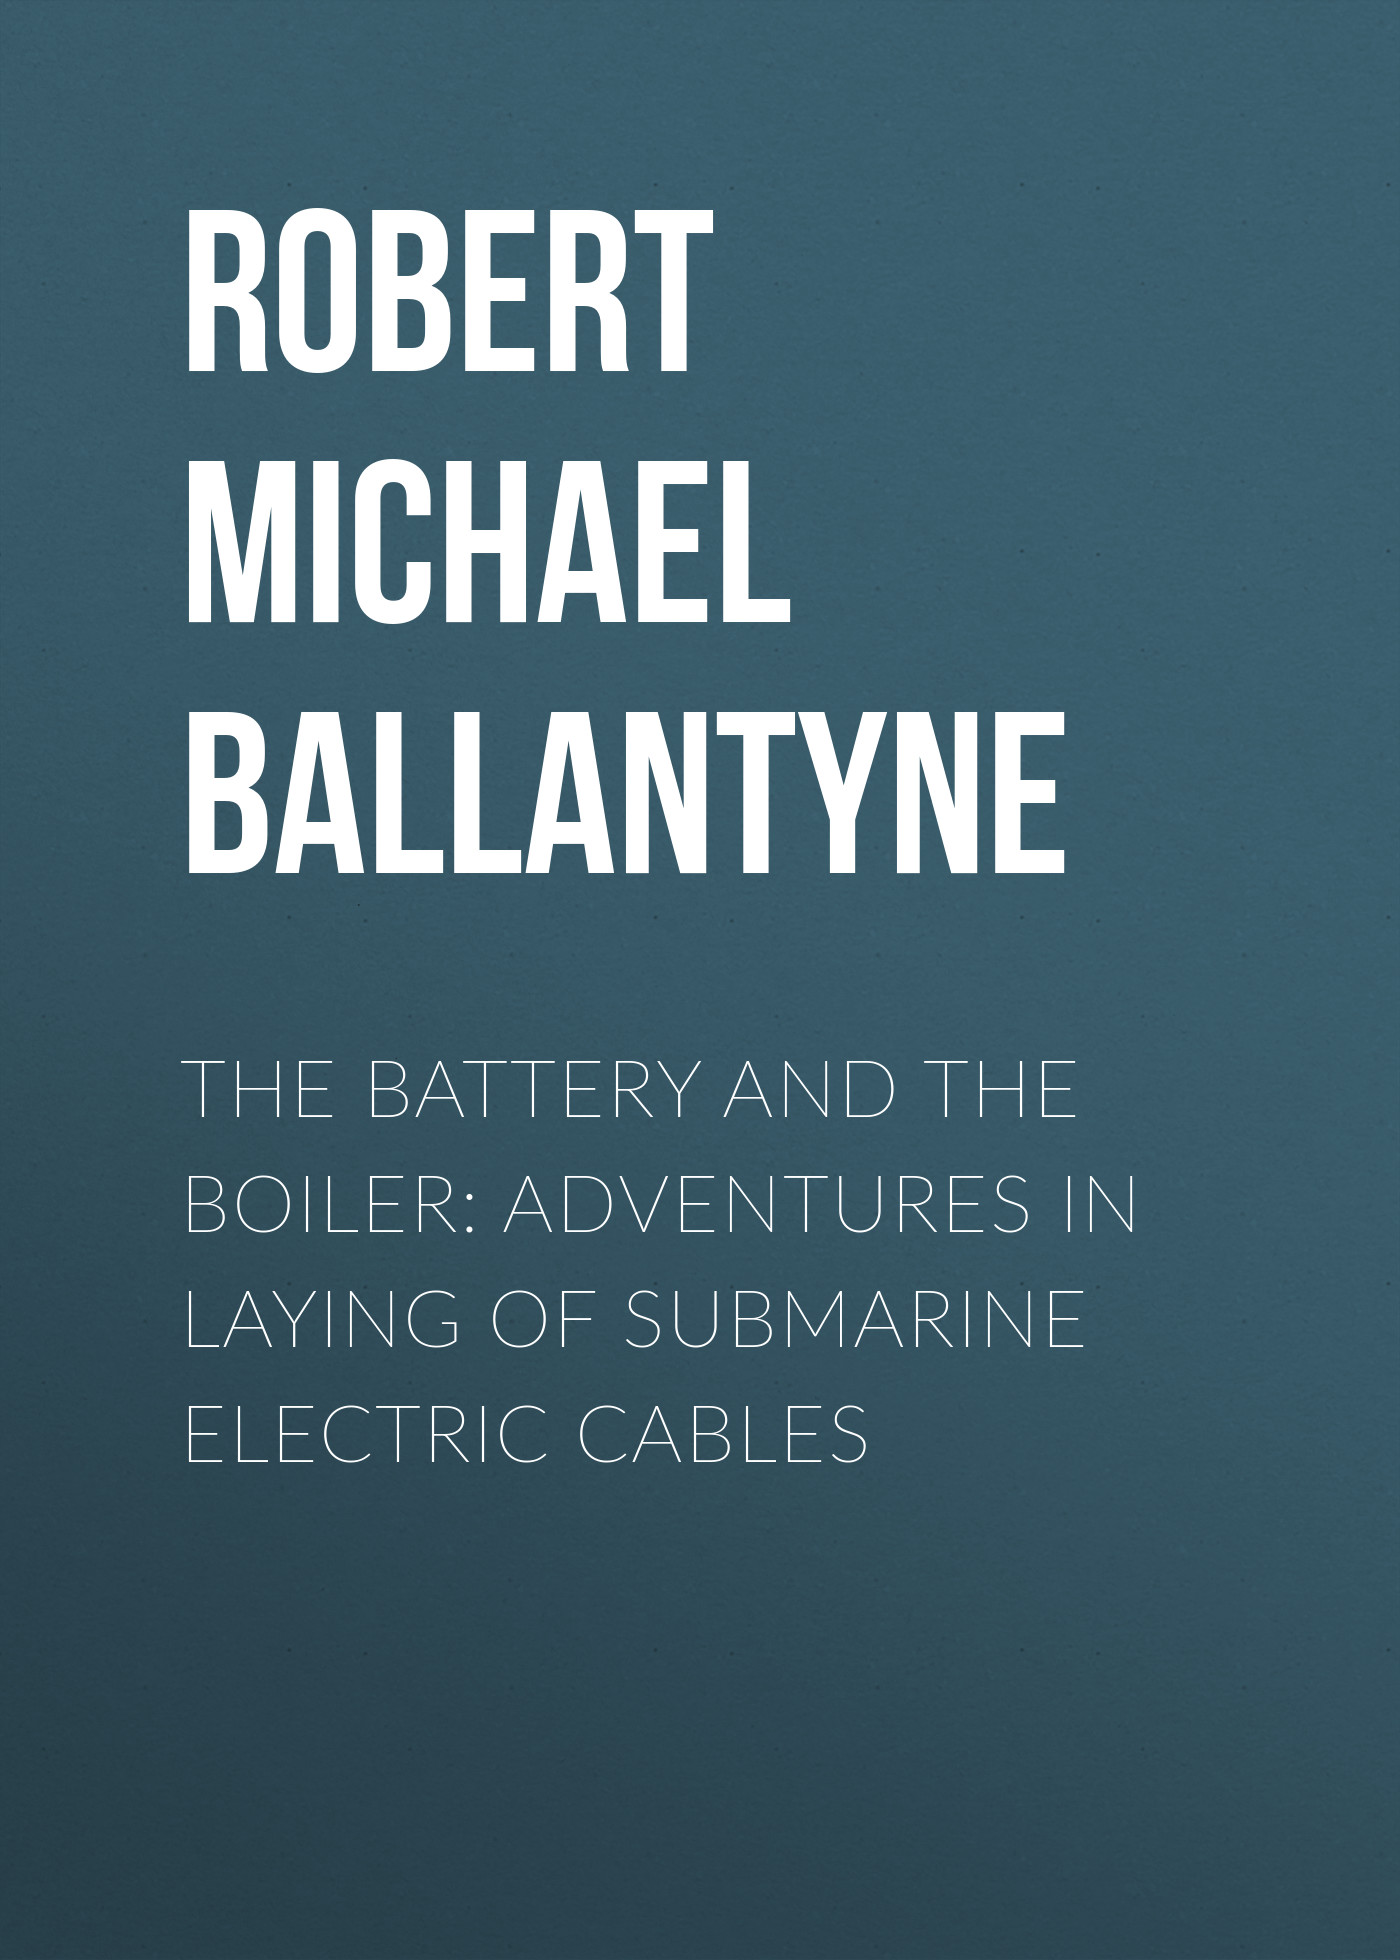 Книга The Battery and the Boiler: Adventures in Laying of Submarine Electric Cables из серии , созданная Robert Michael Ballantyne, может относится к жанру Детские приключения, Литература 19 века, Зарубежная старинная литература, Зарубежная классика, Зарубежные детские книги. Стоимость электронной книги The Battery and the Boiler: Adventures in Laying of Submarine Electric Cables с идентификатором 36093765 составляет 0 руб.